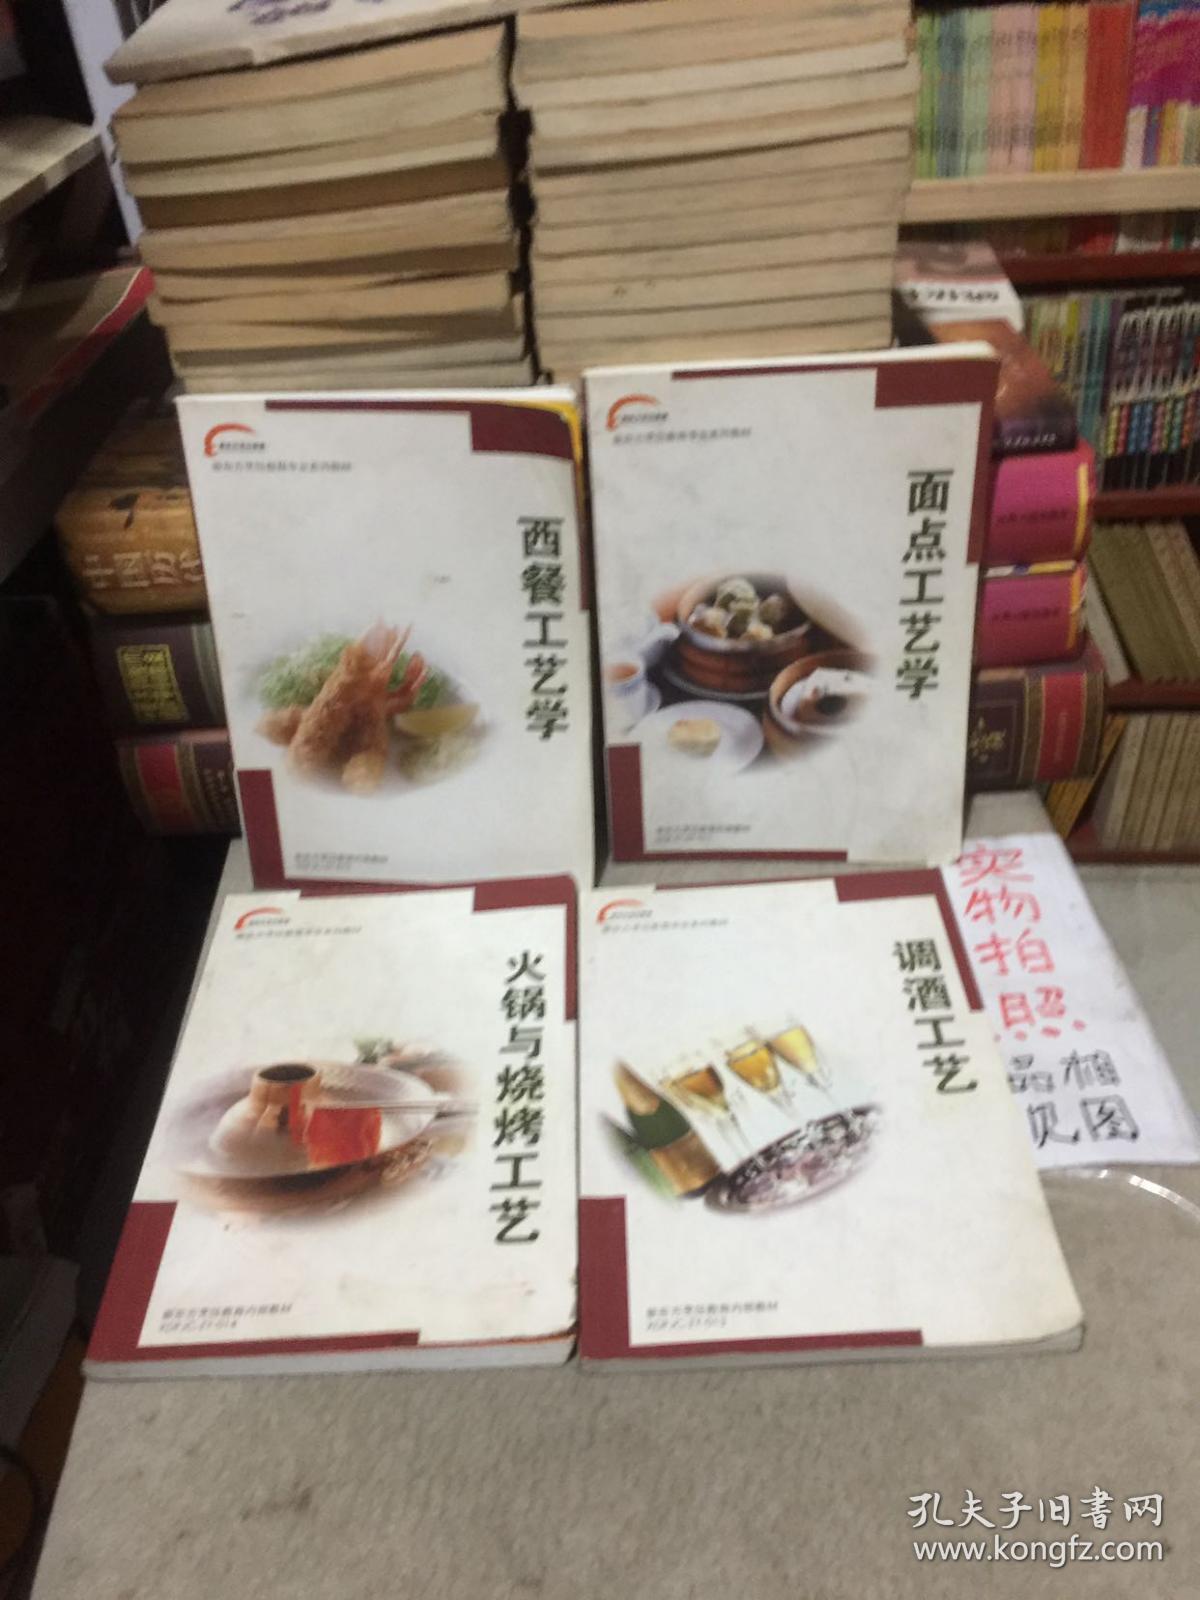 新东方烹饪教育专业系列教材：调酒工艺、火锅与烧烤工艺、面点工艺学、西餐工艺学(4本合售)